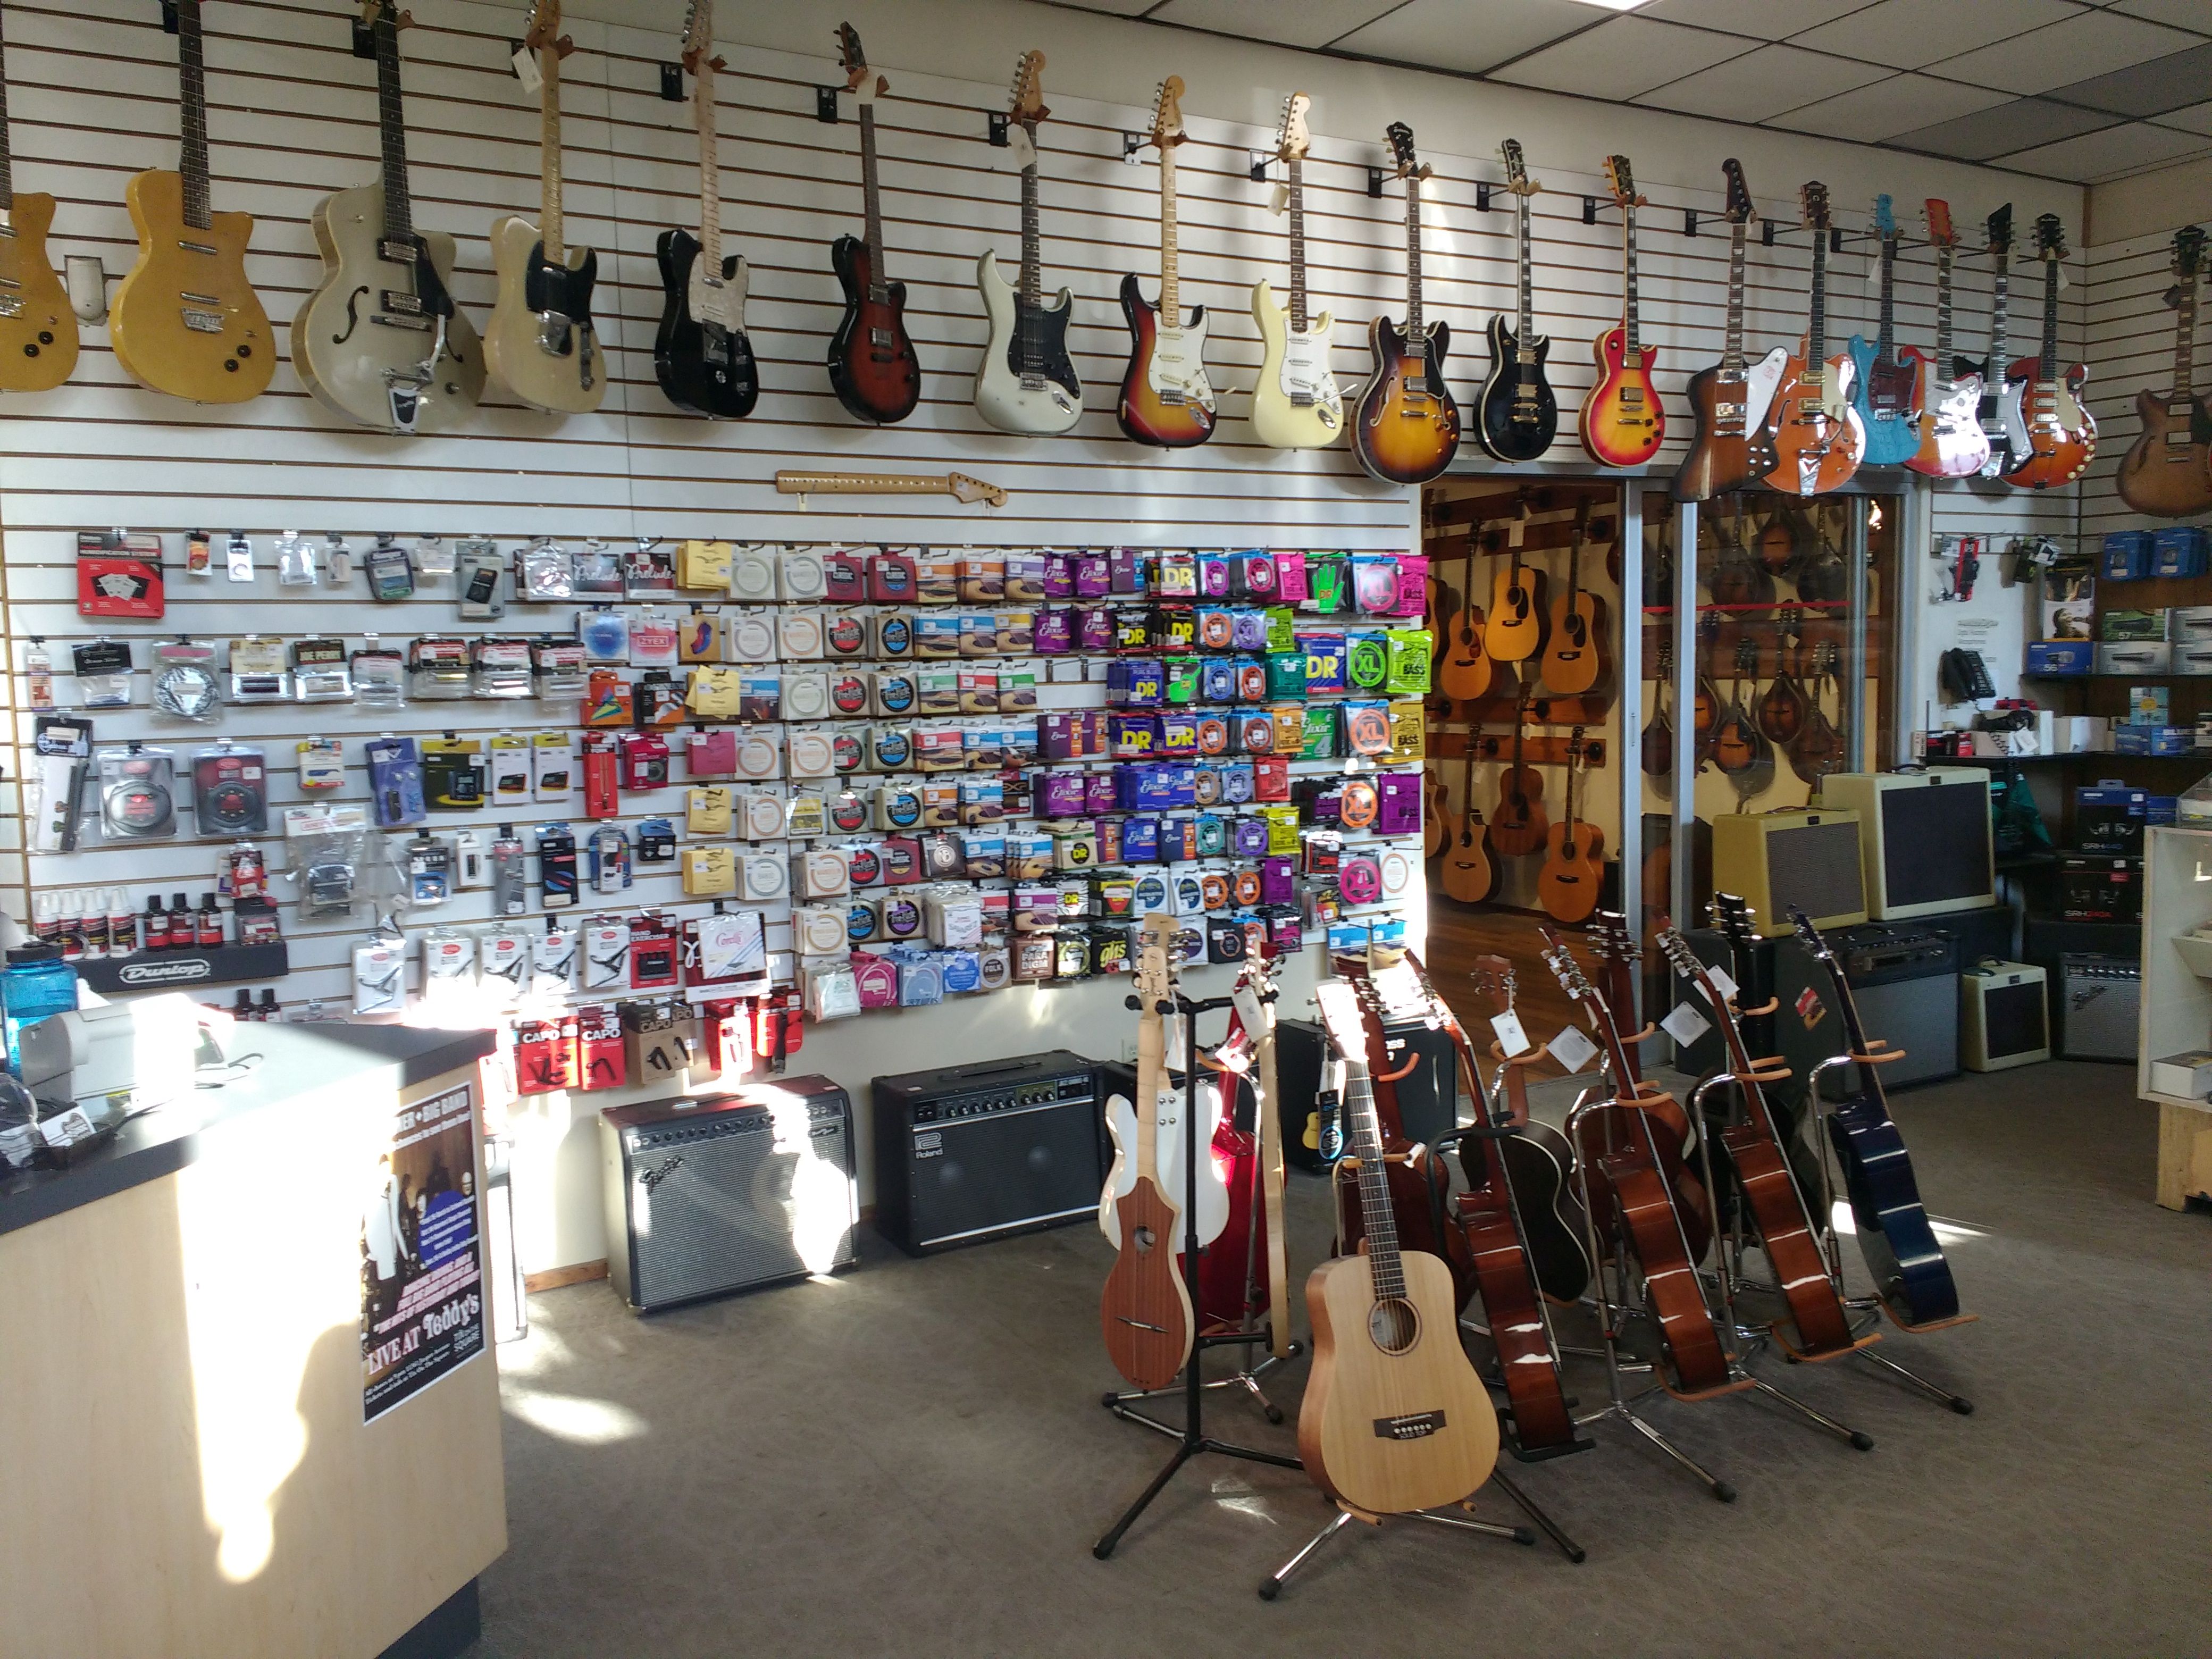 Acoustic Music Shop